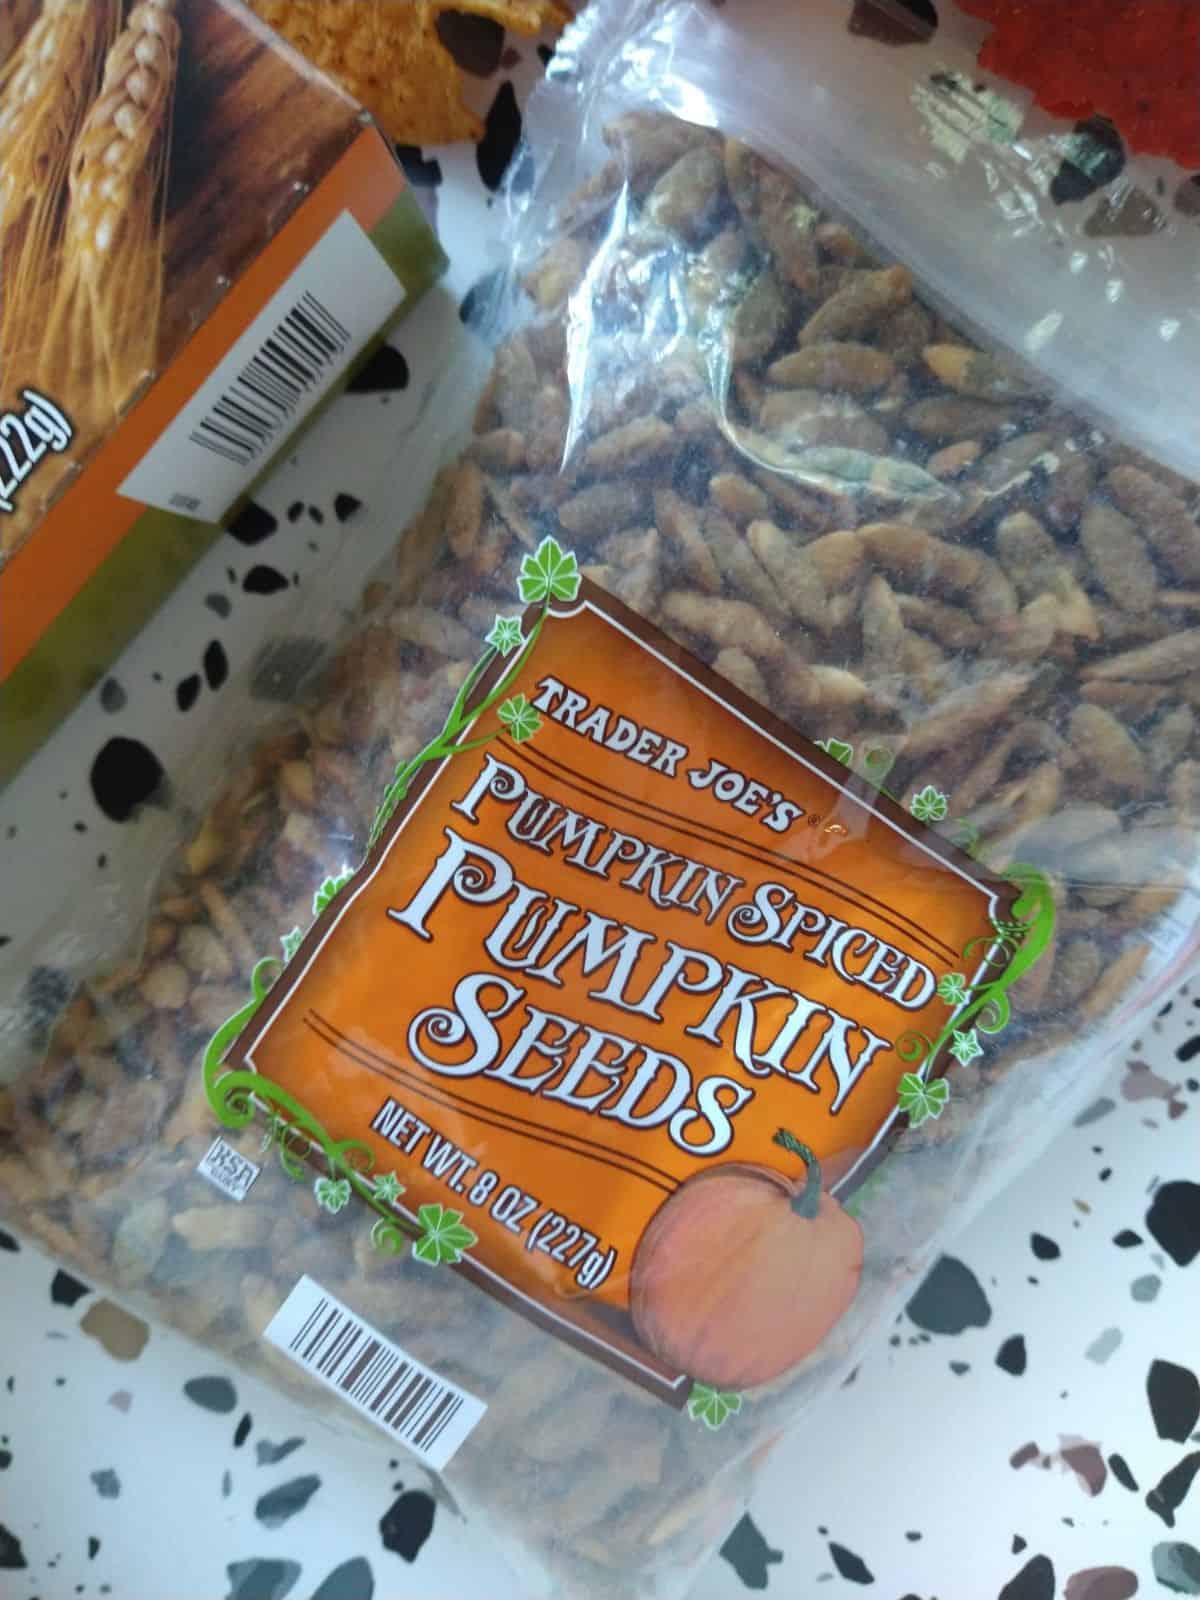 A close up of a clear bag of Trader Joe's Pumpkin Spiced Pumpkin Seeds.